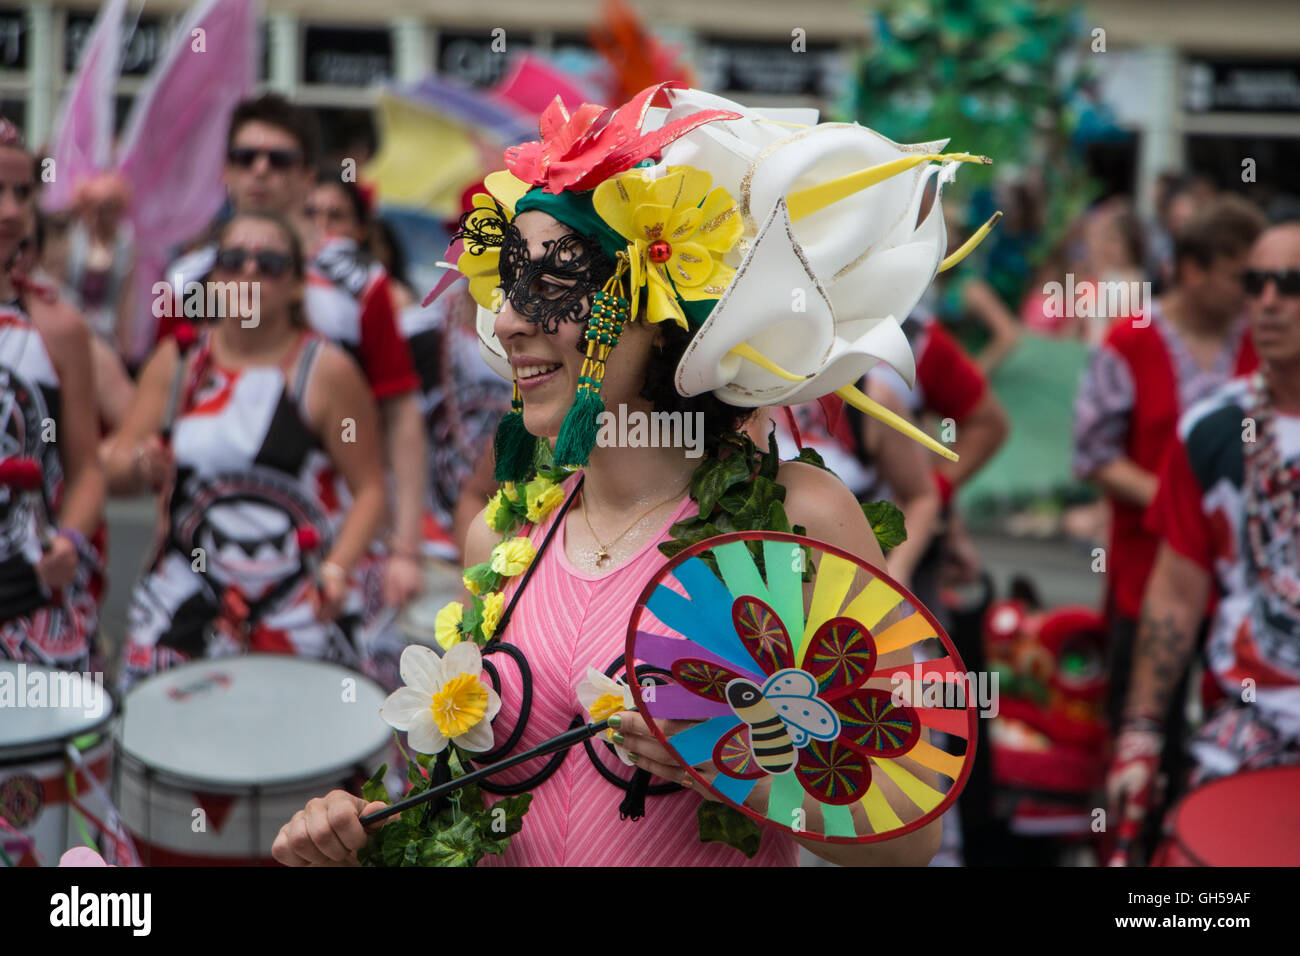 Donna in costume elaborato prendendo parte al 2016 Bath Street Carnevale, REGNO UNITO Foto Stock